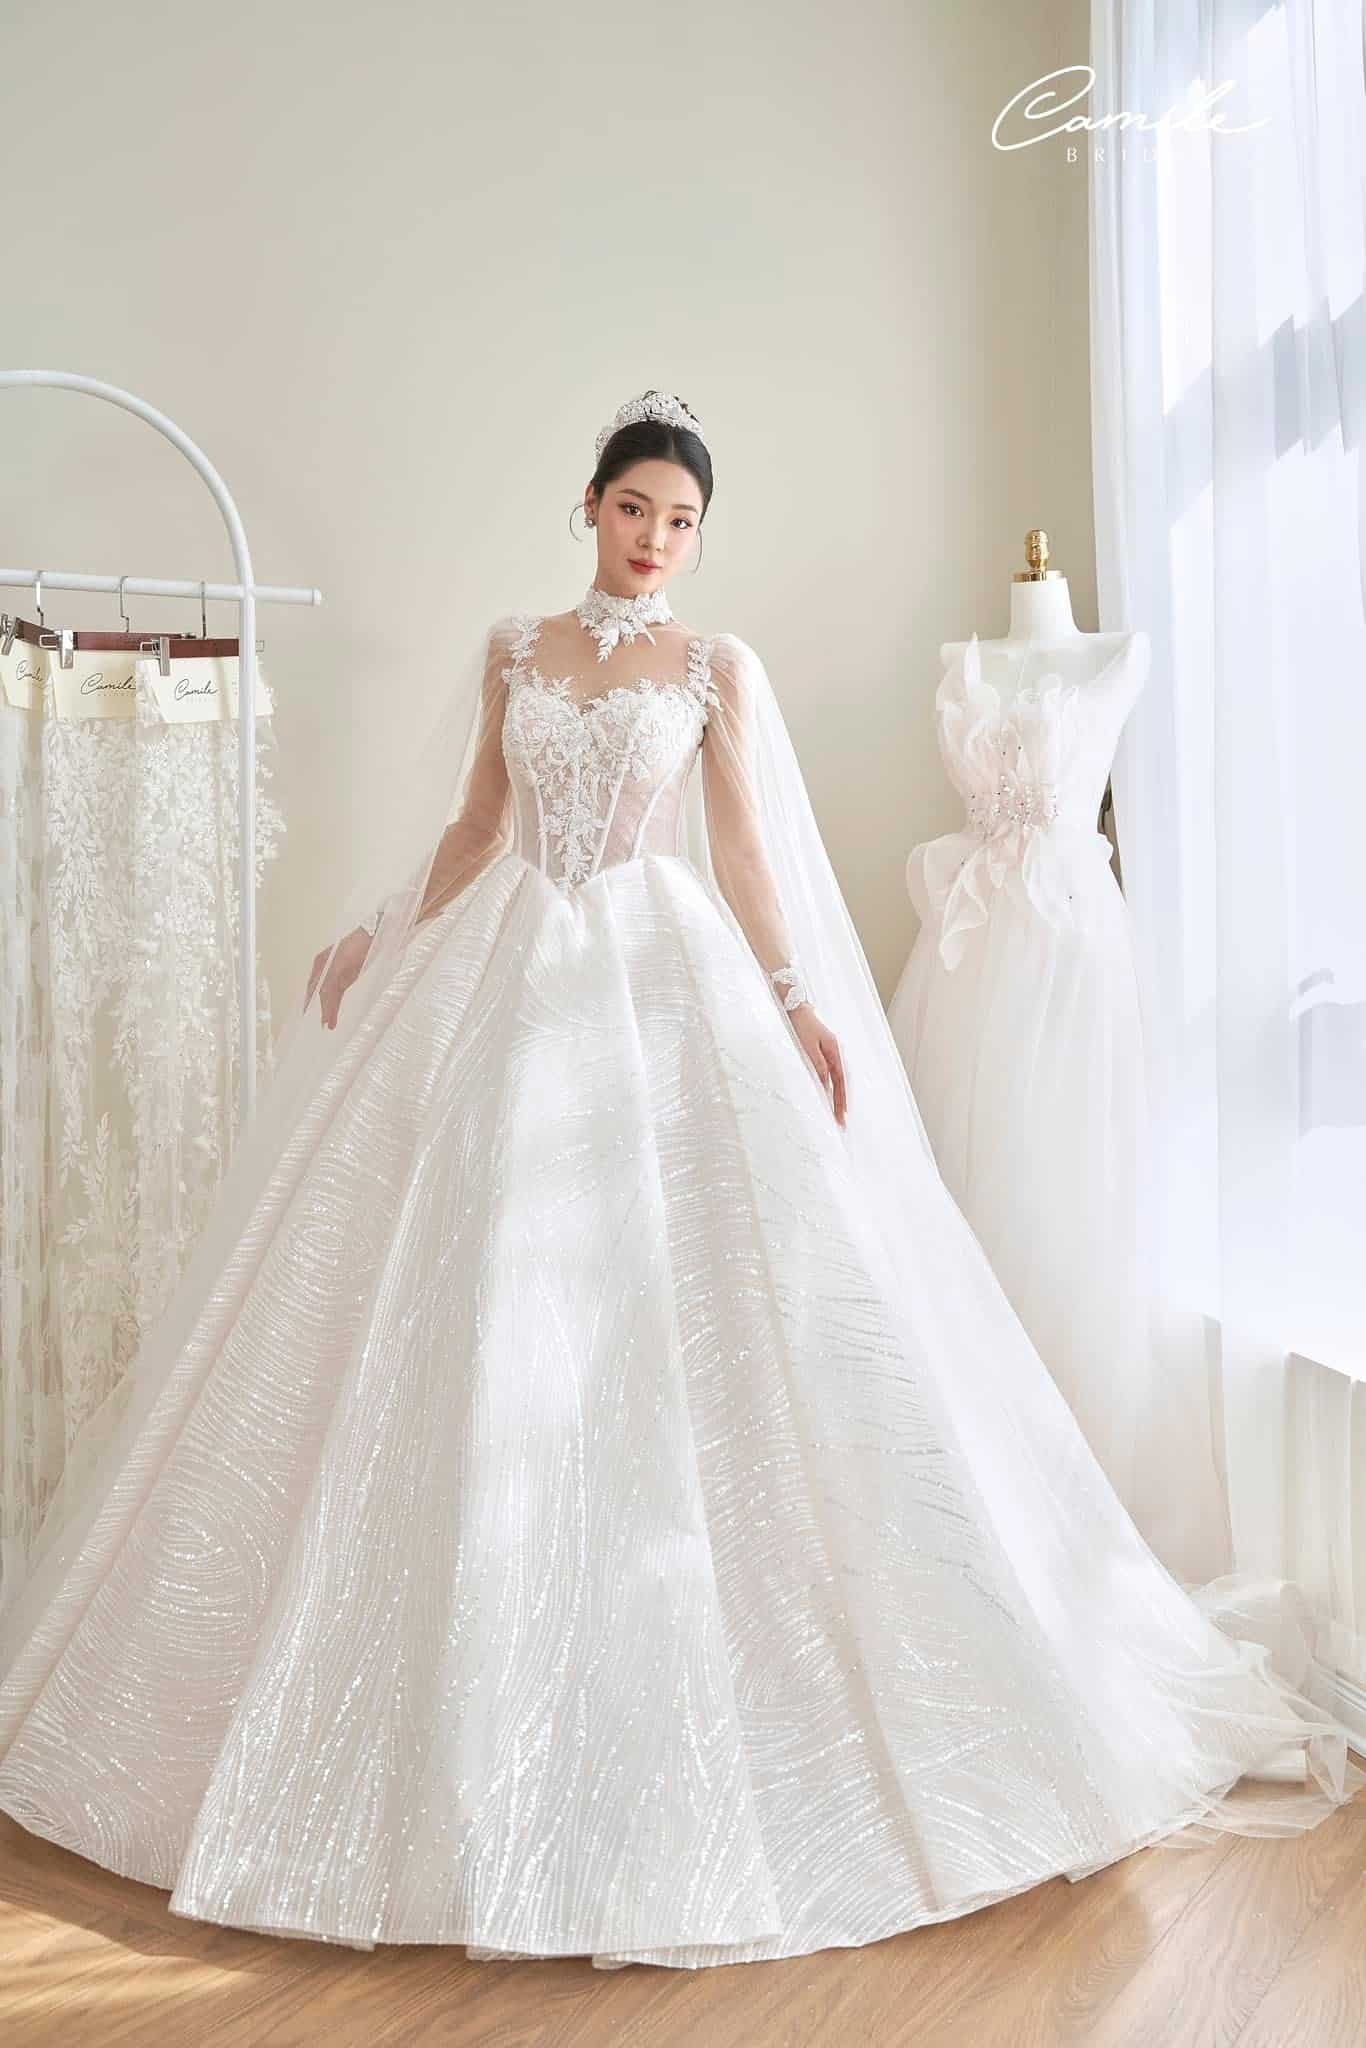 Tổng hợp 100 mẫu thiết kế áo cưới dành cho cô dâu gầy đẹp 2021